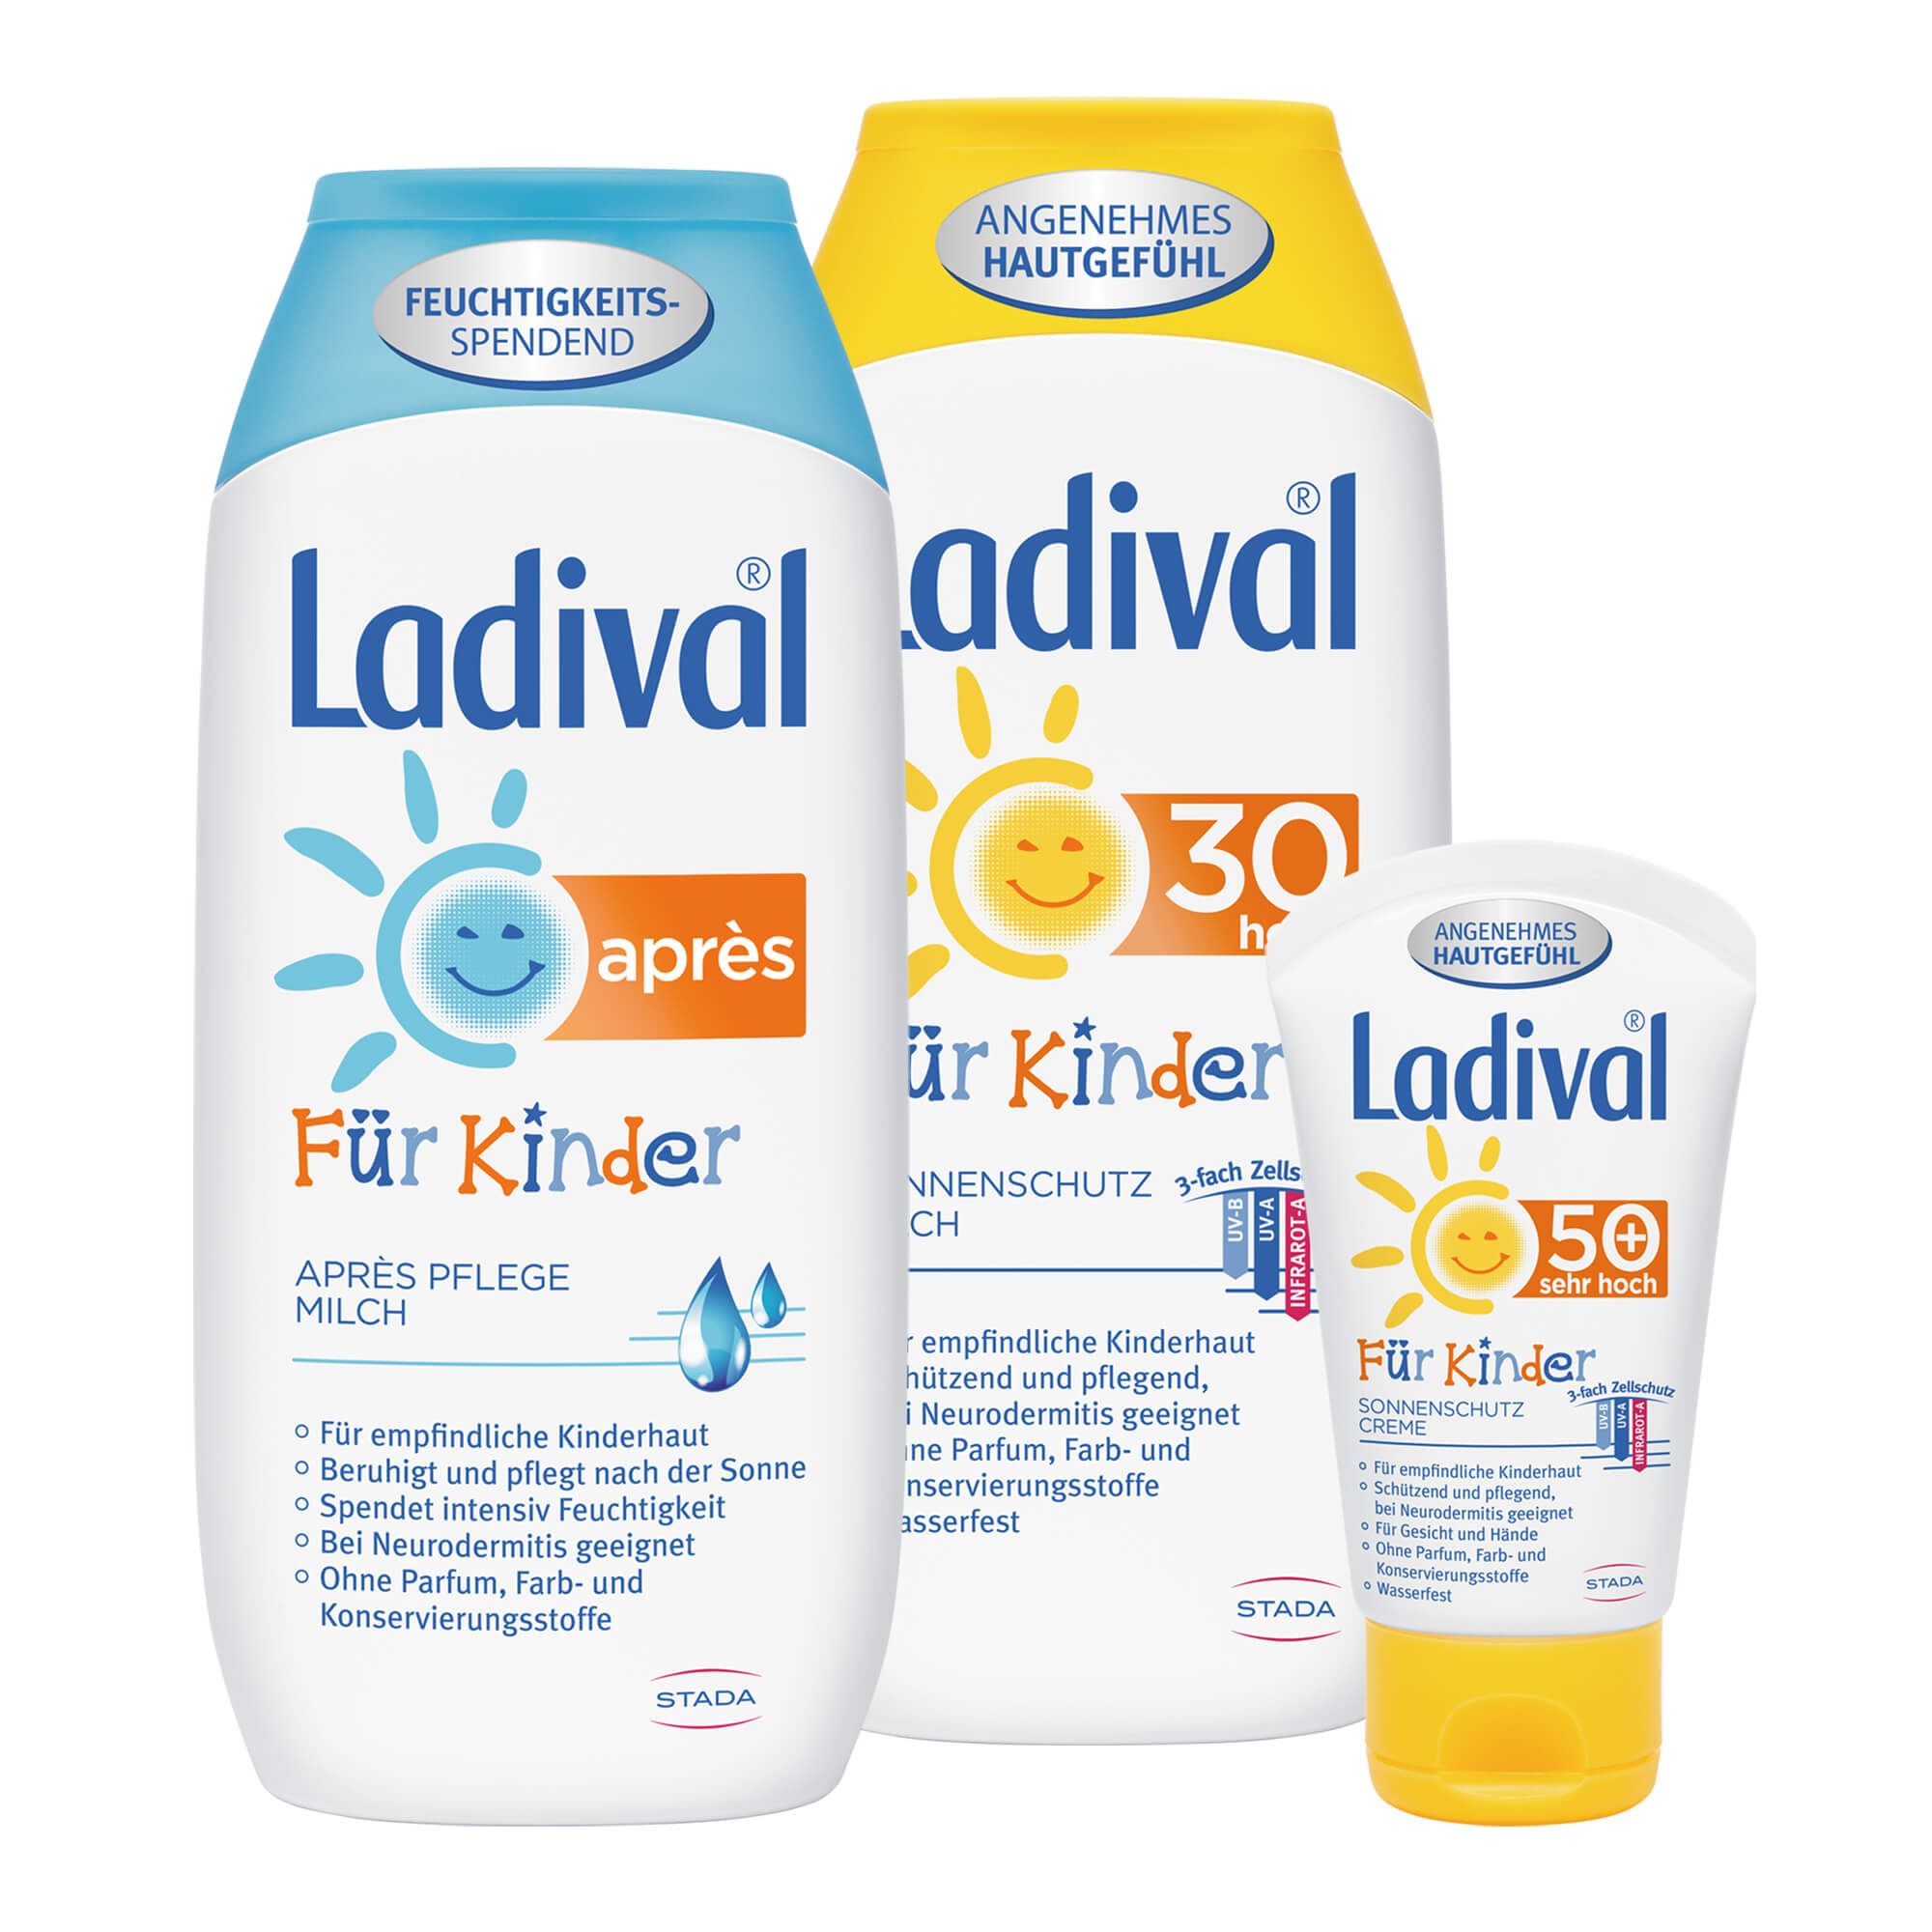 Sonnenschutz von Ladival. Für empfindliche Kinderhaut. Mit je 200 ml Sonnenschutzmilch und Après Pflegemilch sowie 50 ml Sonnenschutzcreme für Gesicht und Hände.